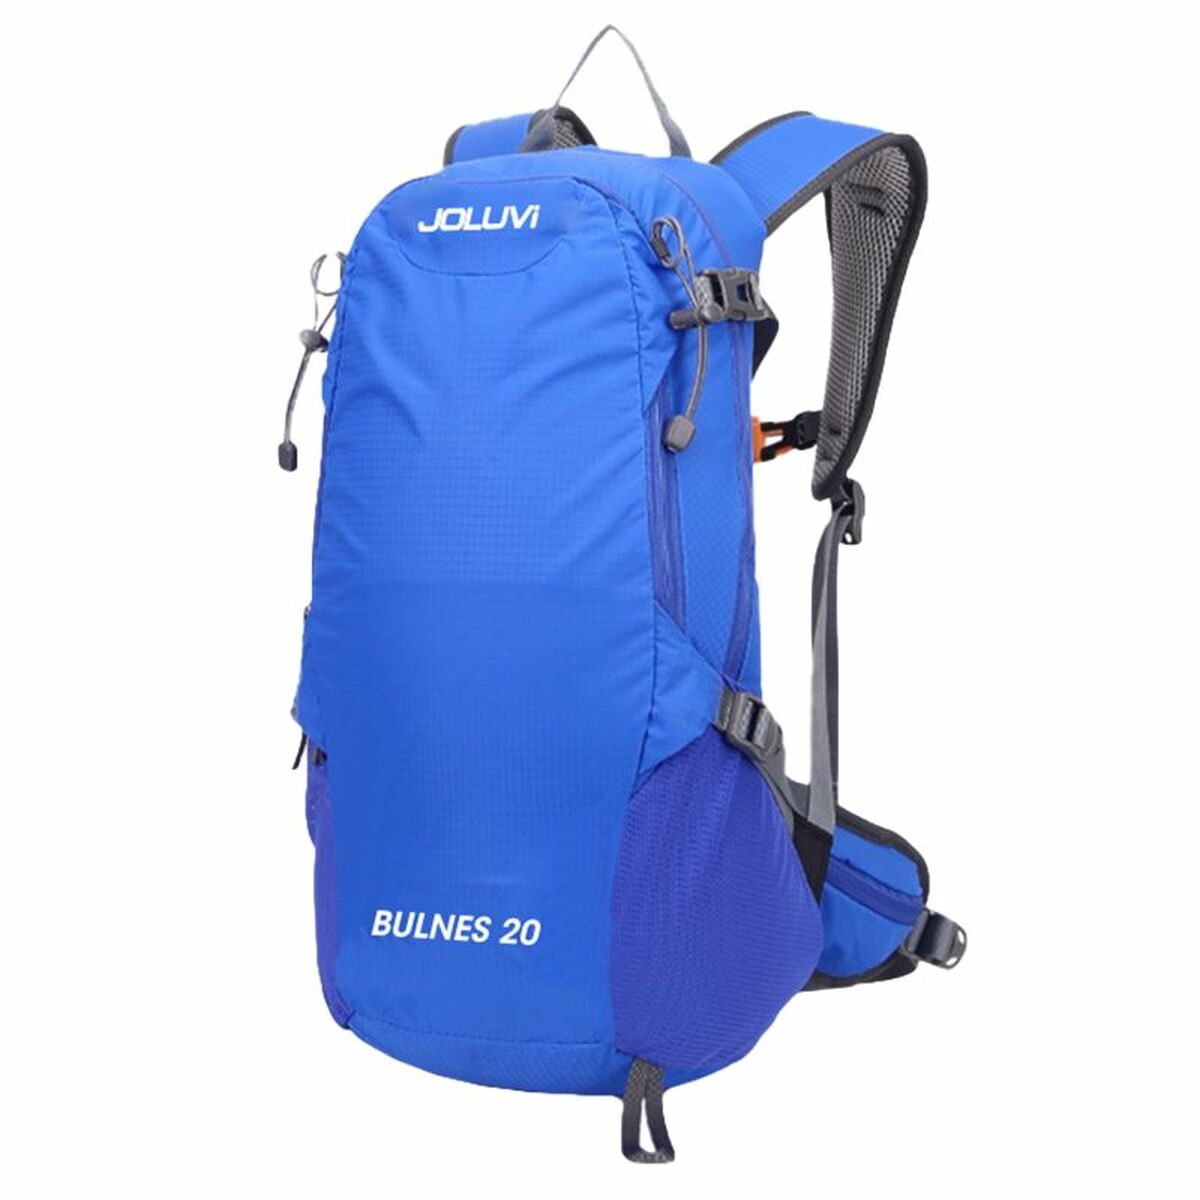 Hiking Backpack Joluvi Bulnes 20 Blue